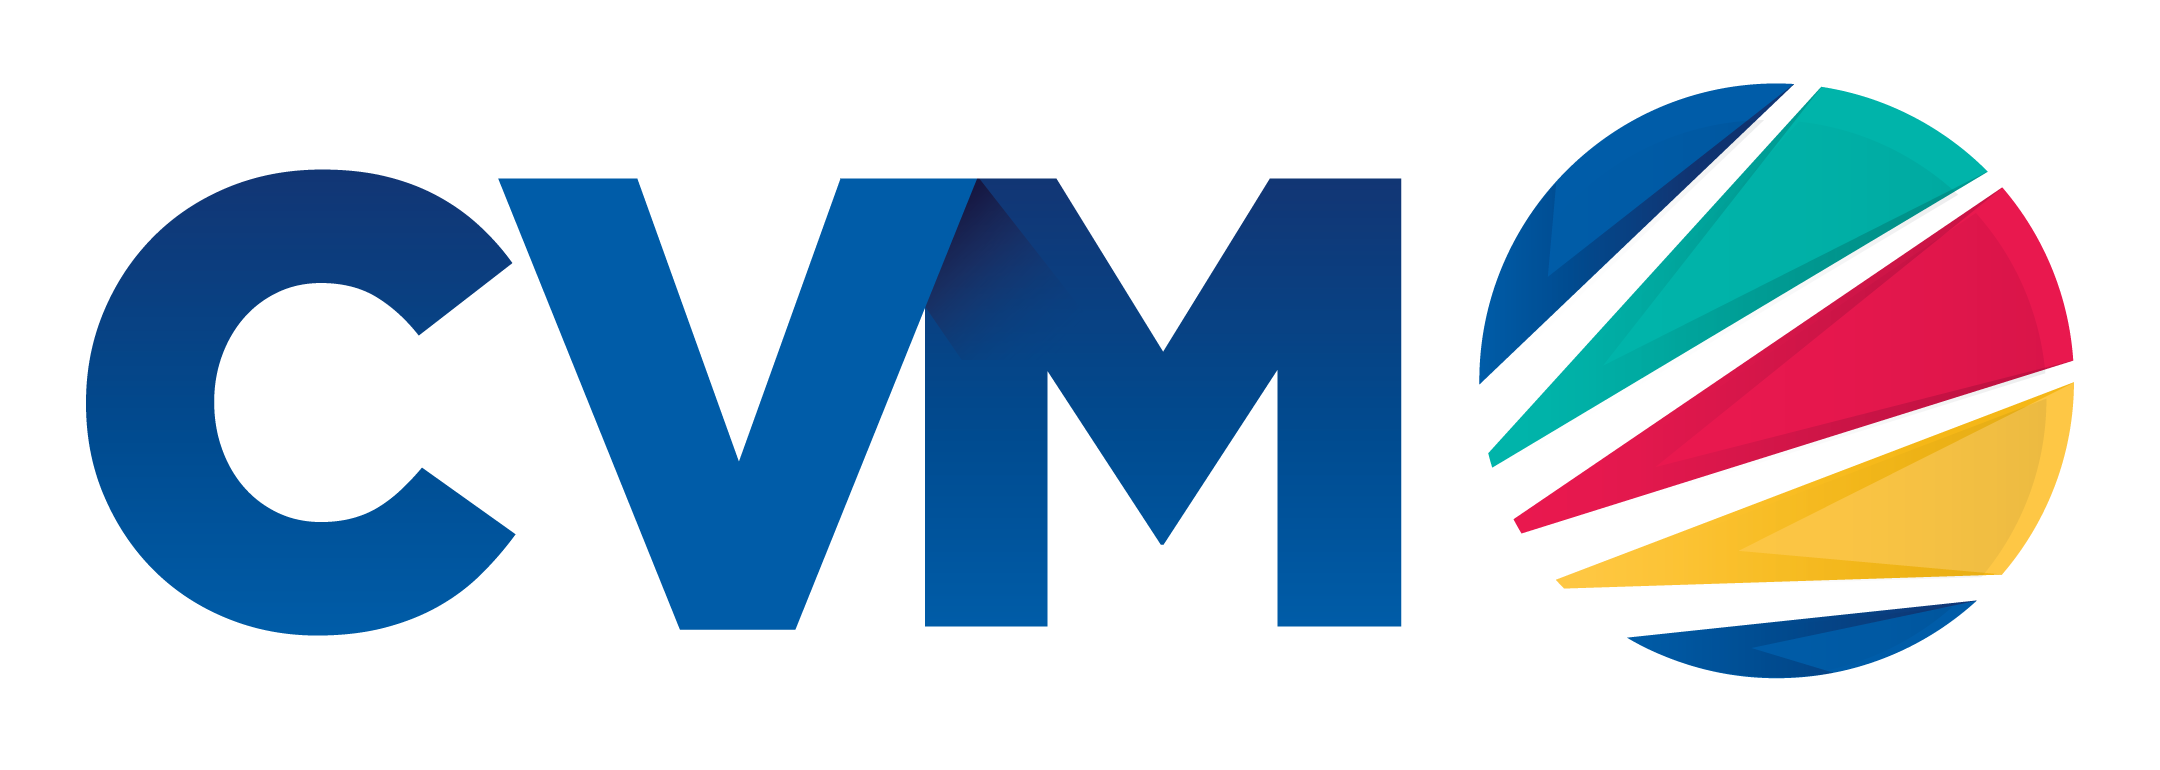 CVM-Logo-2016